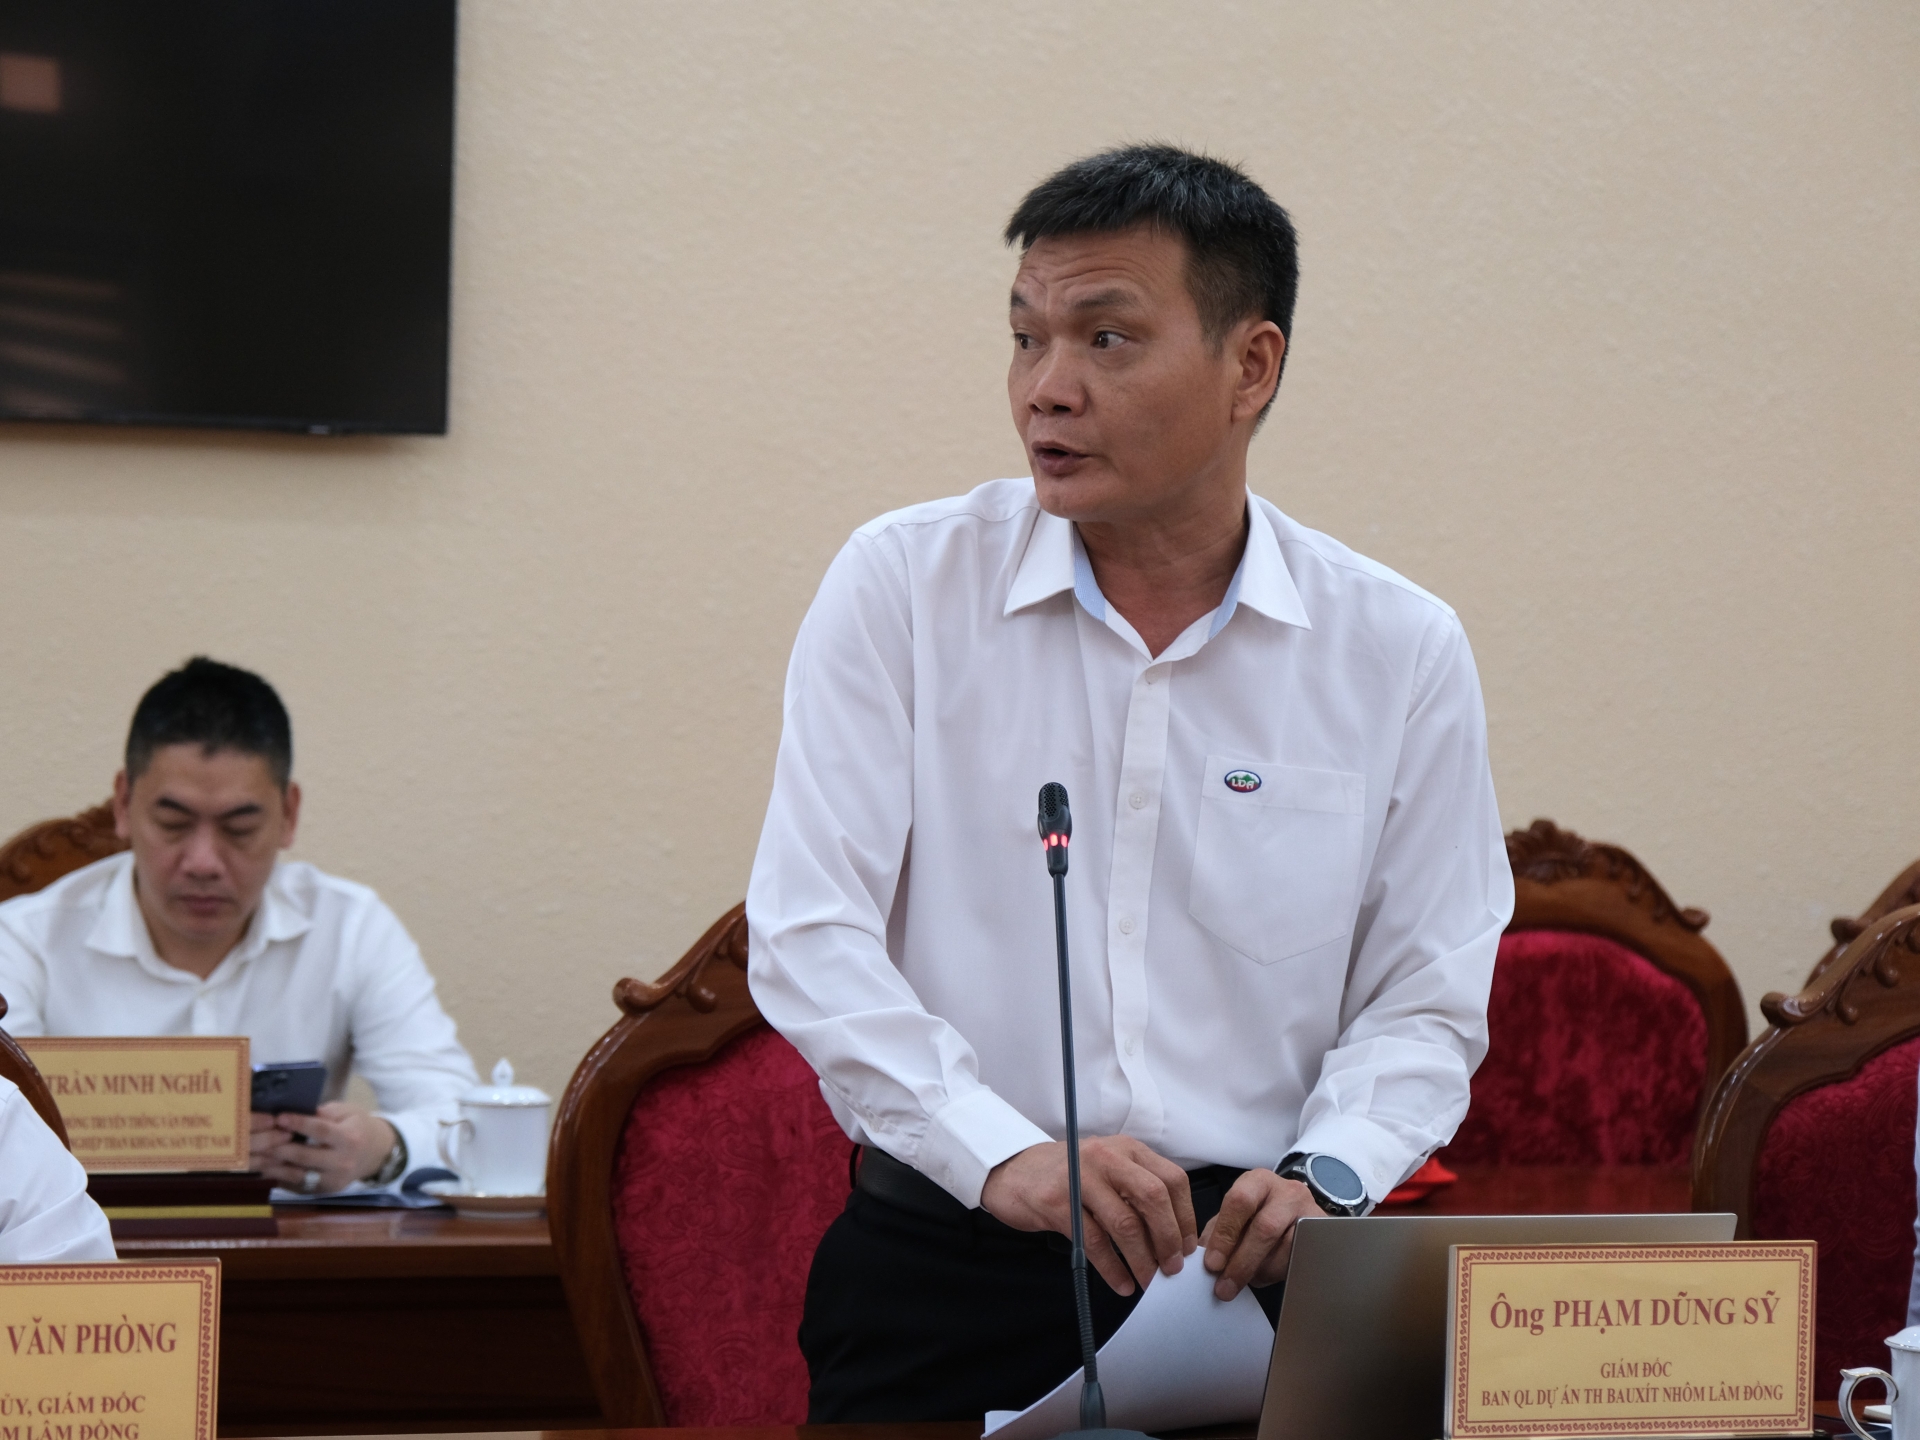 Đồng chí Phạm Dũng Sỹ - Giám đốc Ban Quản lý Dự án tổ hợp Bauxít Nhôm - Lâm Đồng trình bày những vướng mắc về công tác bồi thường, giải phóng mặt bằng